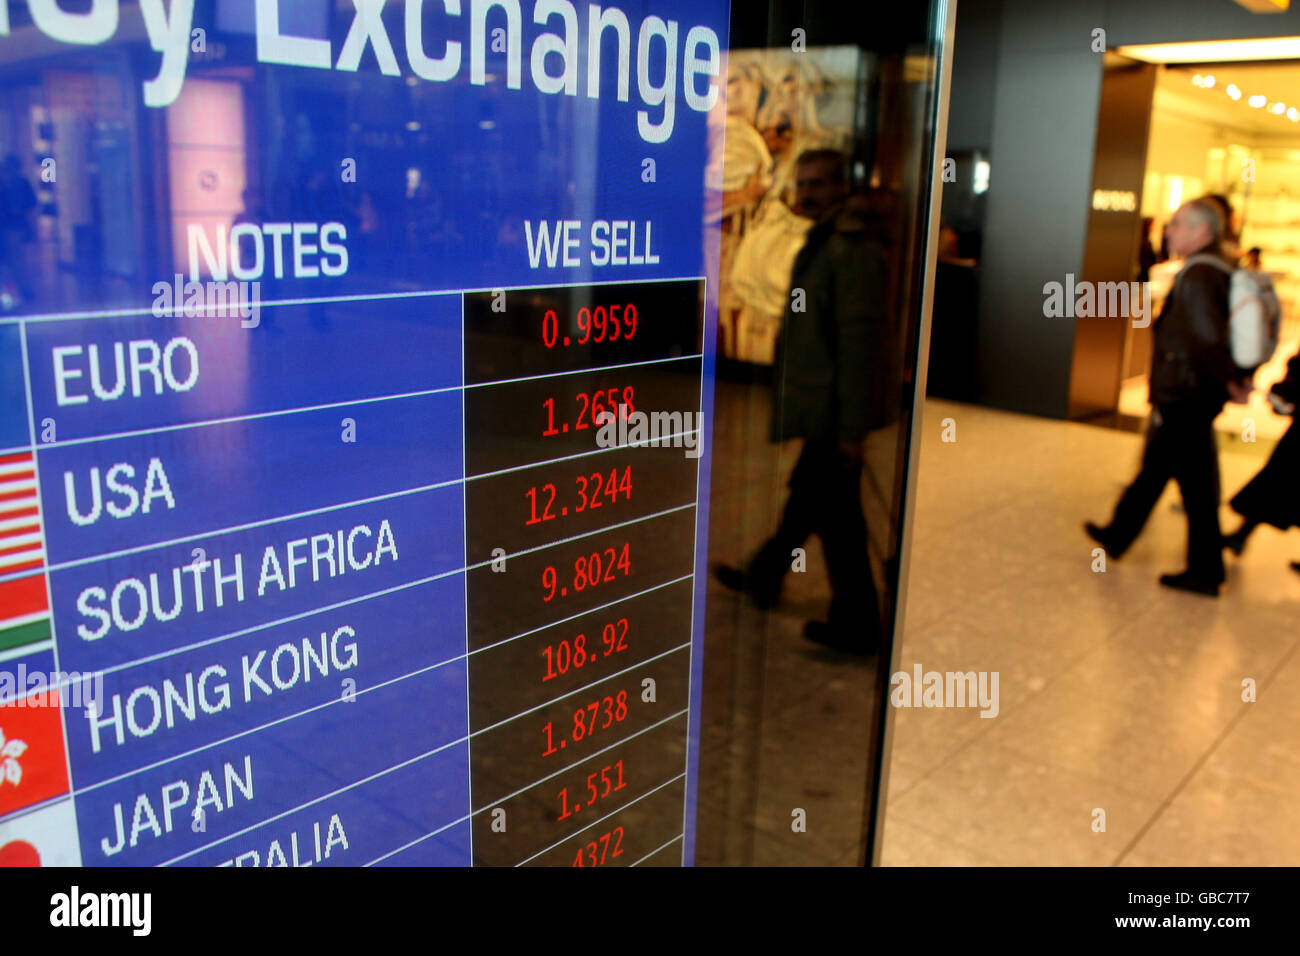 Magazzino Generale - Travelex Cambio valuta - Terminale 5 - Aeroporto di Heathrow Foto Stock